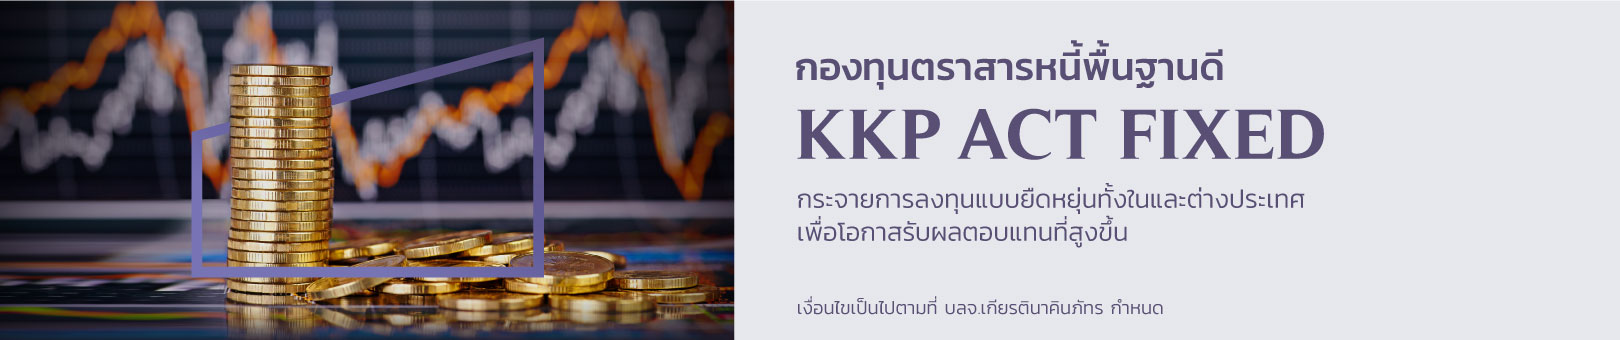 KKP-ACT-FIXED_1620x340